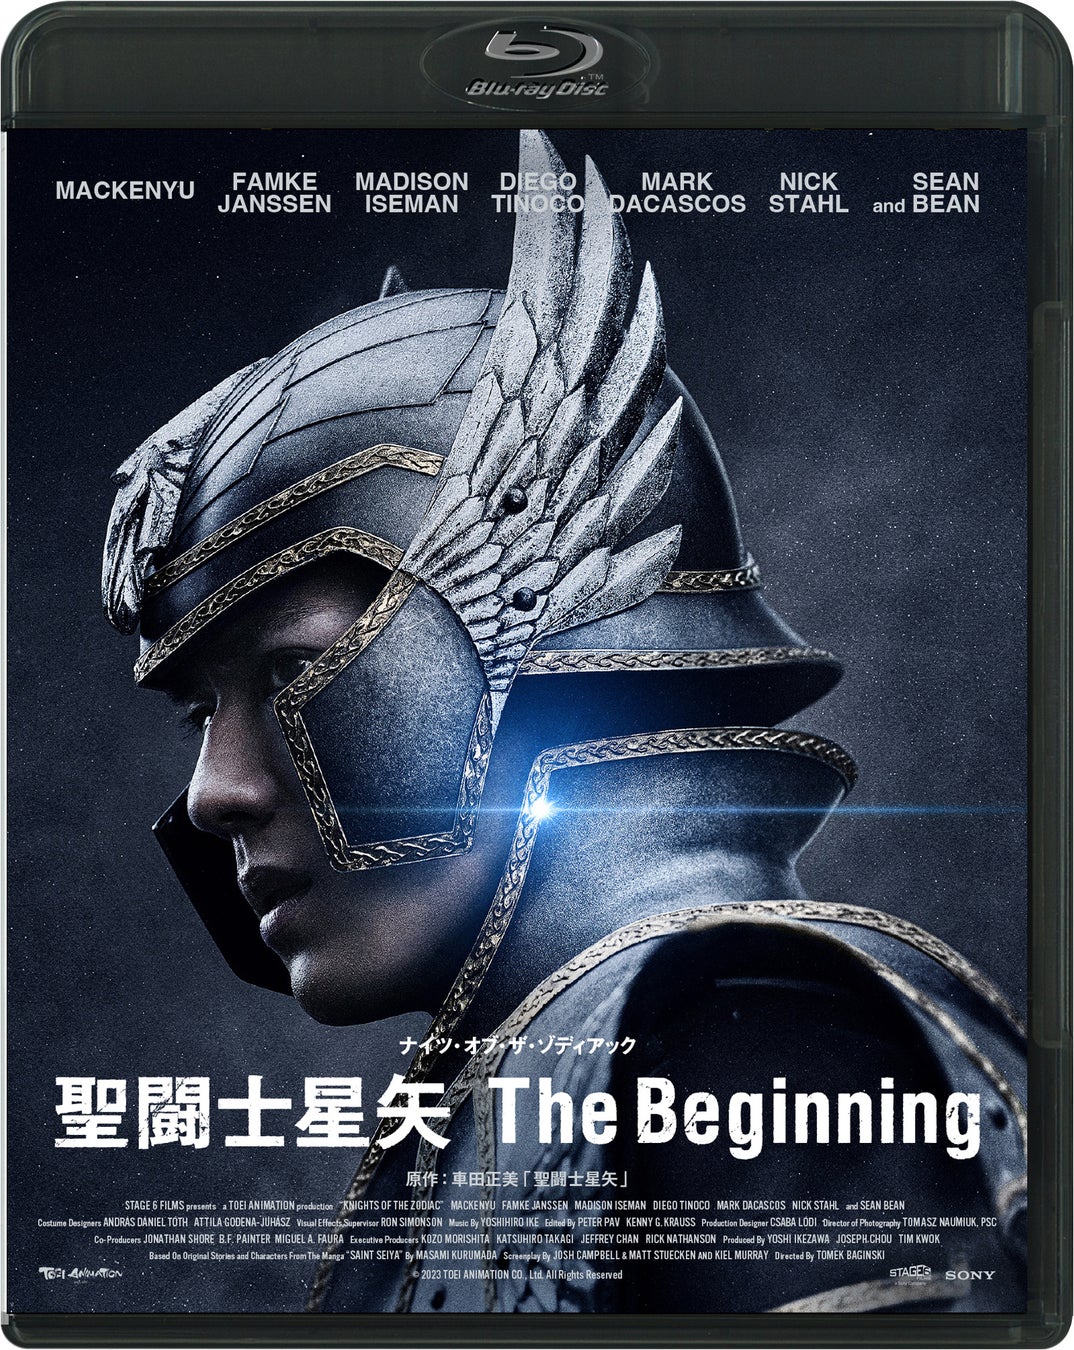 『聖闘士星矢 The Beginning』Blu-ray＆DVDが11/8(水)に発売決定！新田真剣佑×ハリウッド×アクション 日本が全世界に解き放つアクション超大作！